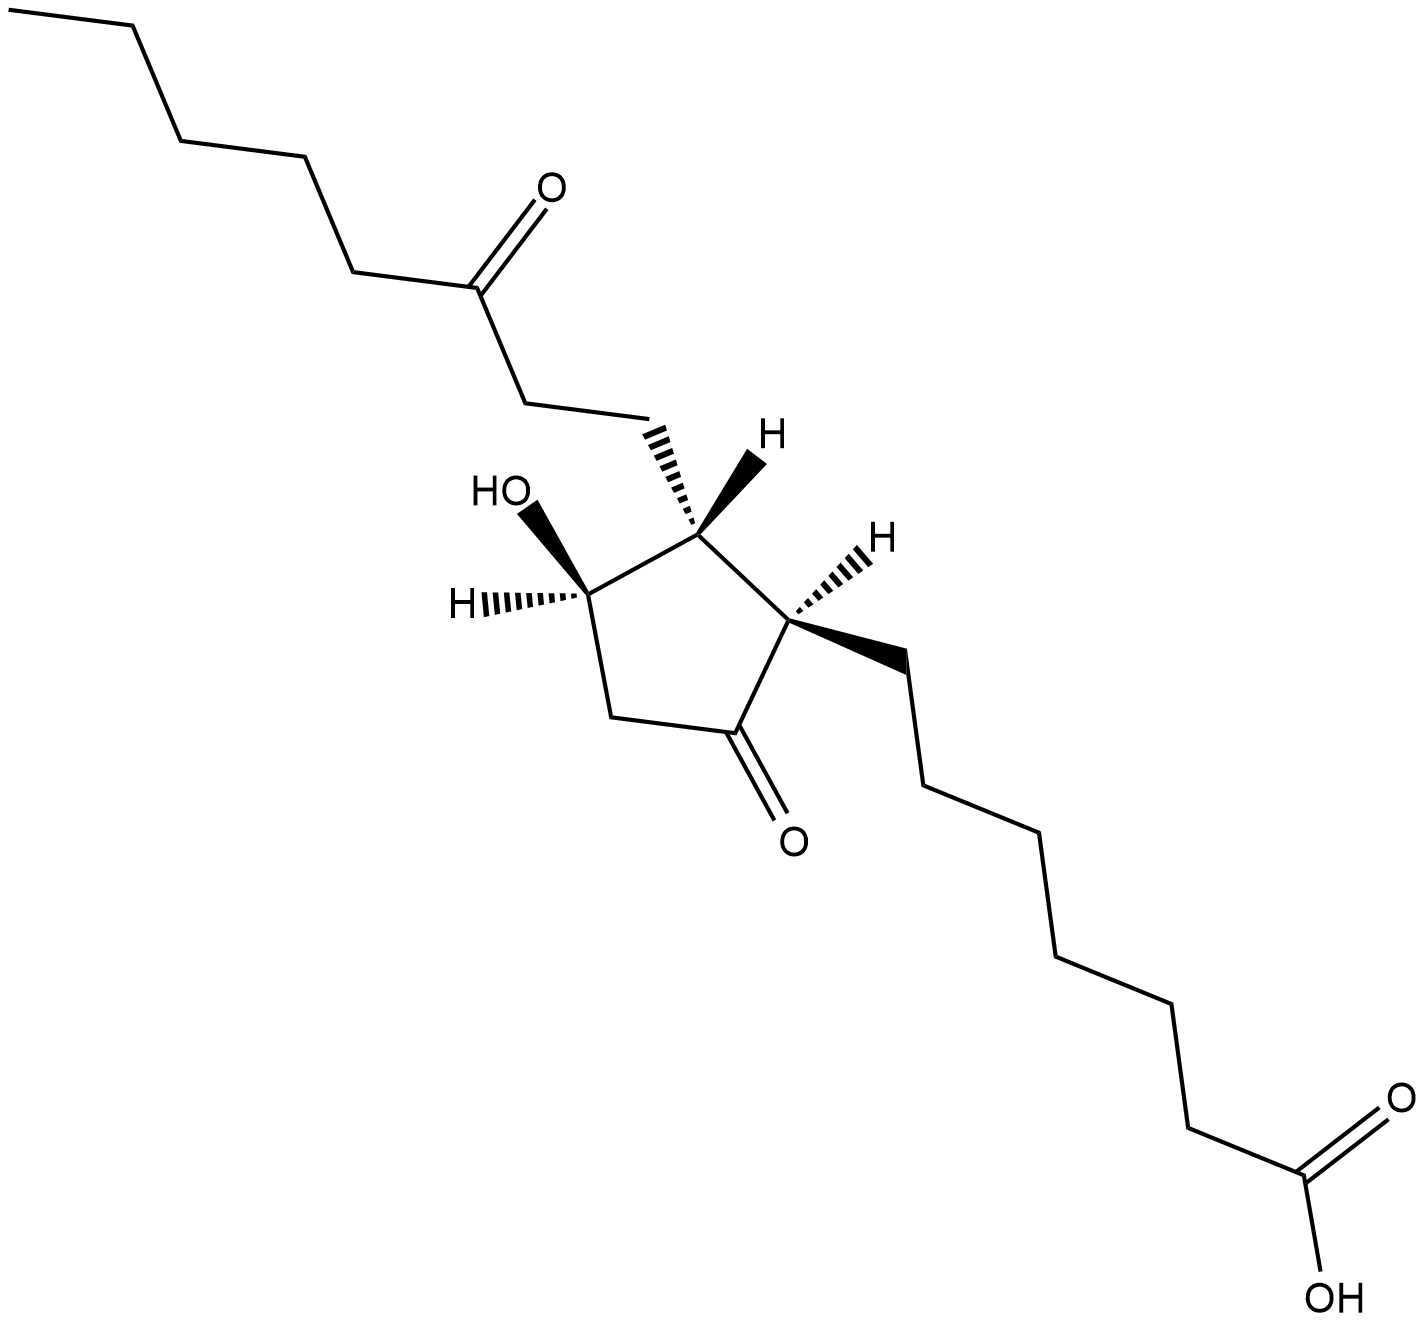 13,14-dihydro-15-keto Prostaglandin E1  Chemical Structure